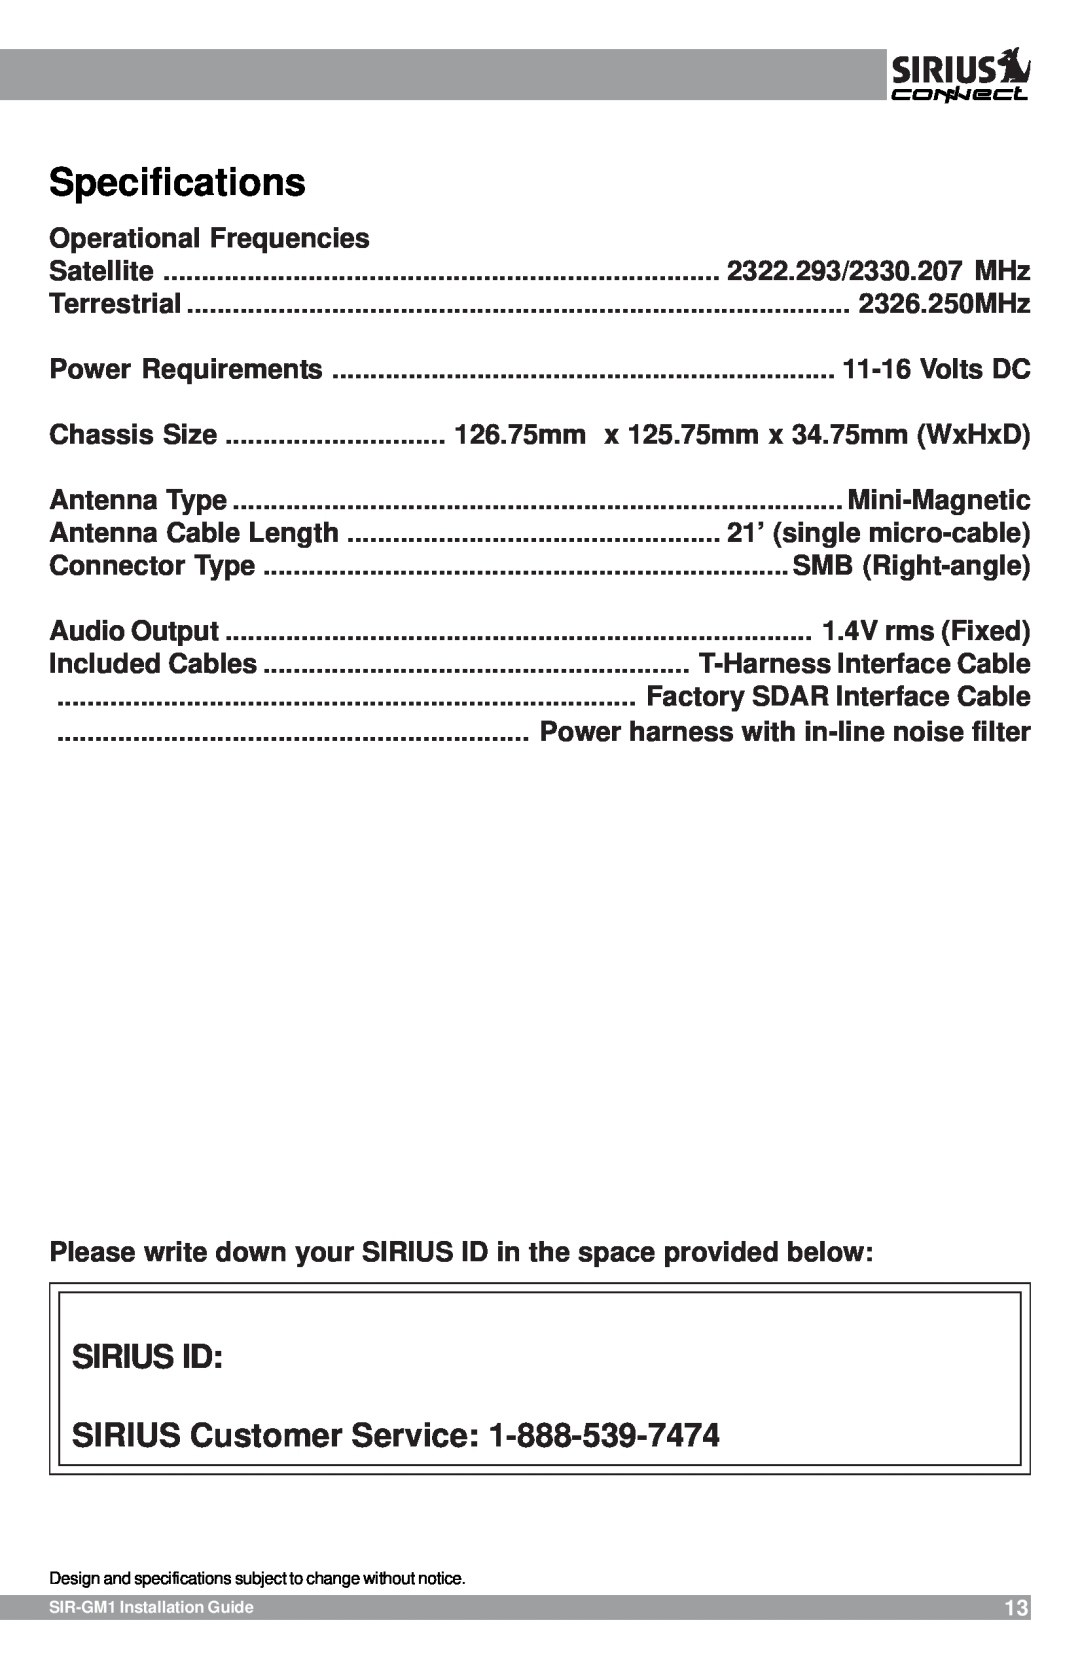 Sirius Satellite Radio SIR-GM1 manual Specifications, SIRIUS ID SIRIUS Customer Service 